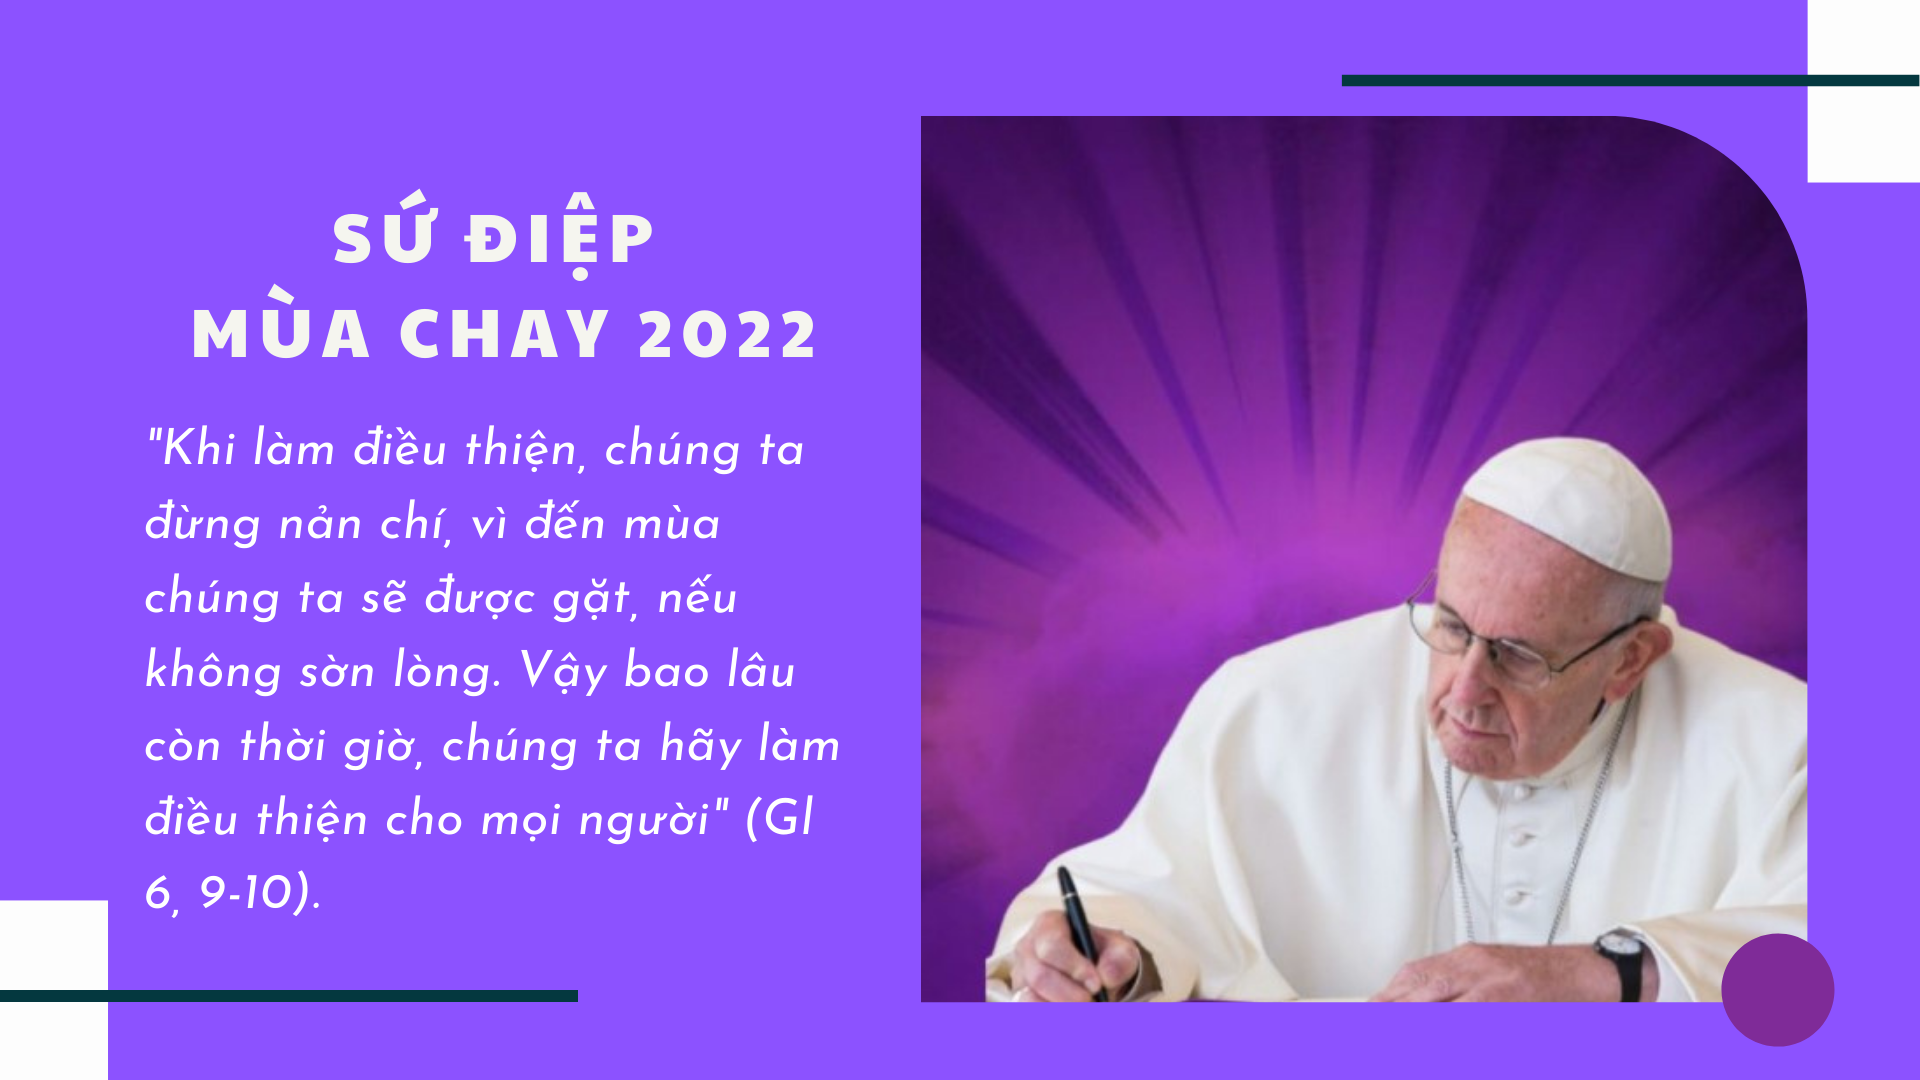 SỨ ĐIỆP MÙA CHAY 2022 CỦA ĐỨC THÁNH CHA PHANXICÔ